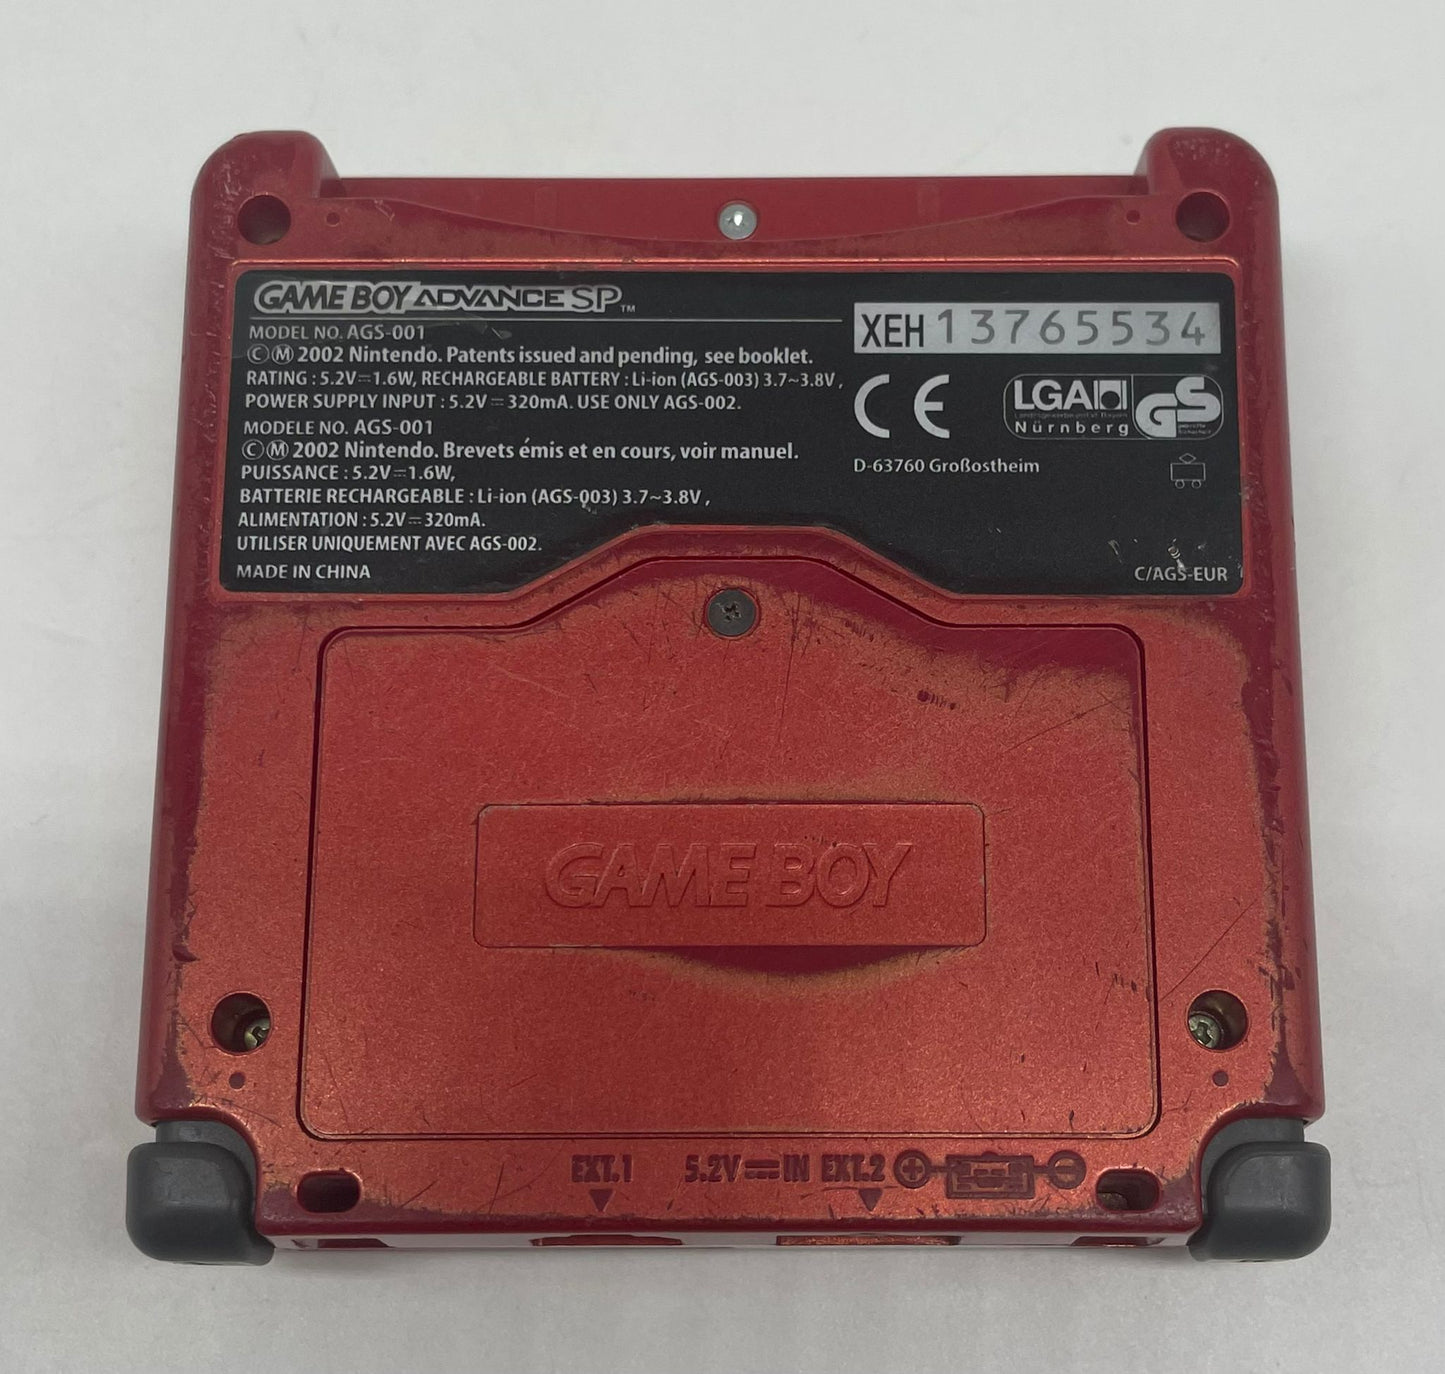 Game Boy Advance SP "SwissGamer" Edition Konsole (gebrauchter Zustand)